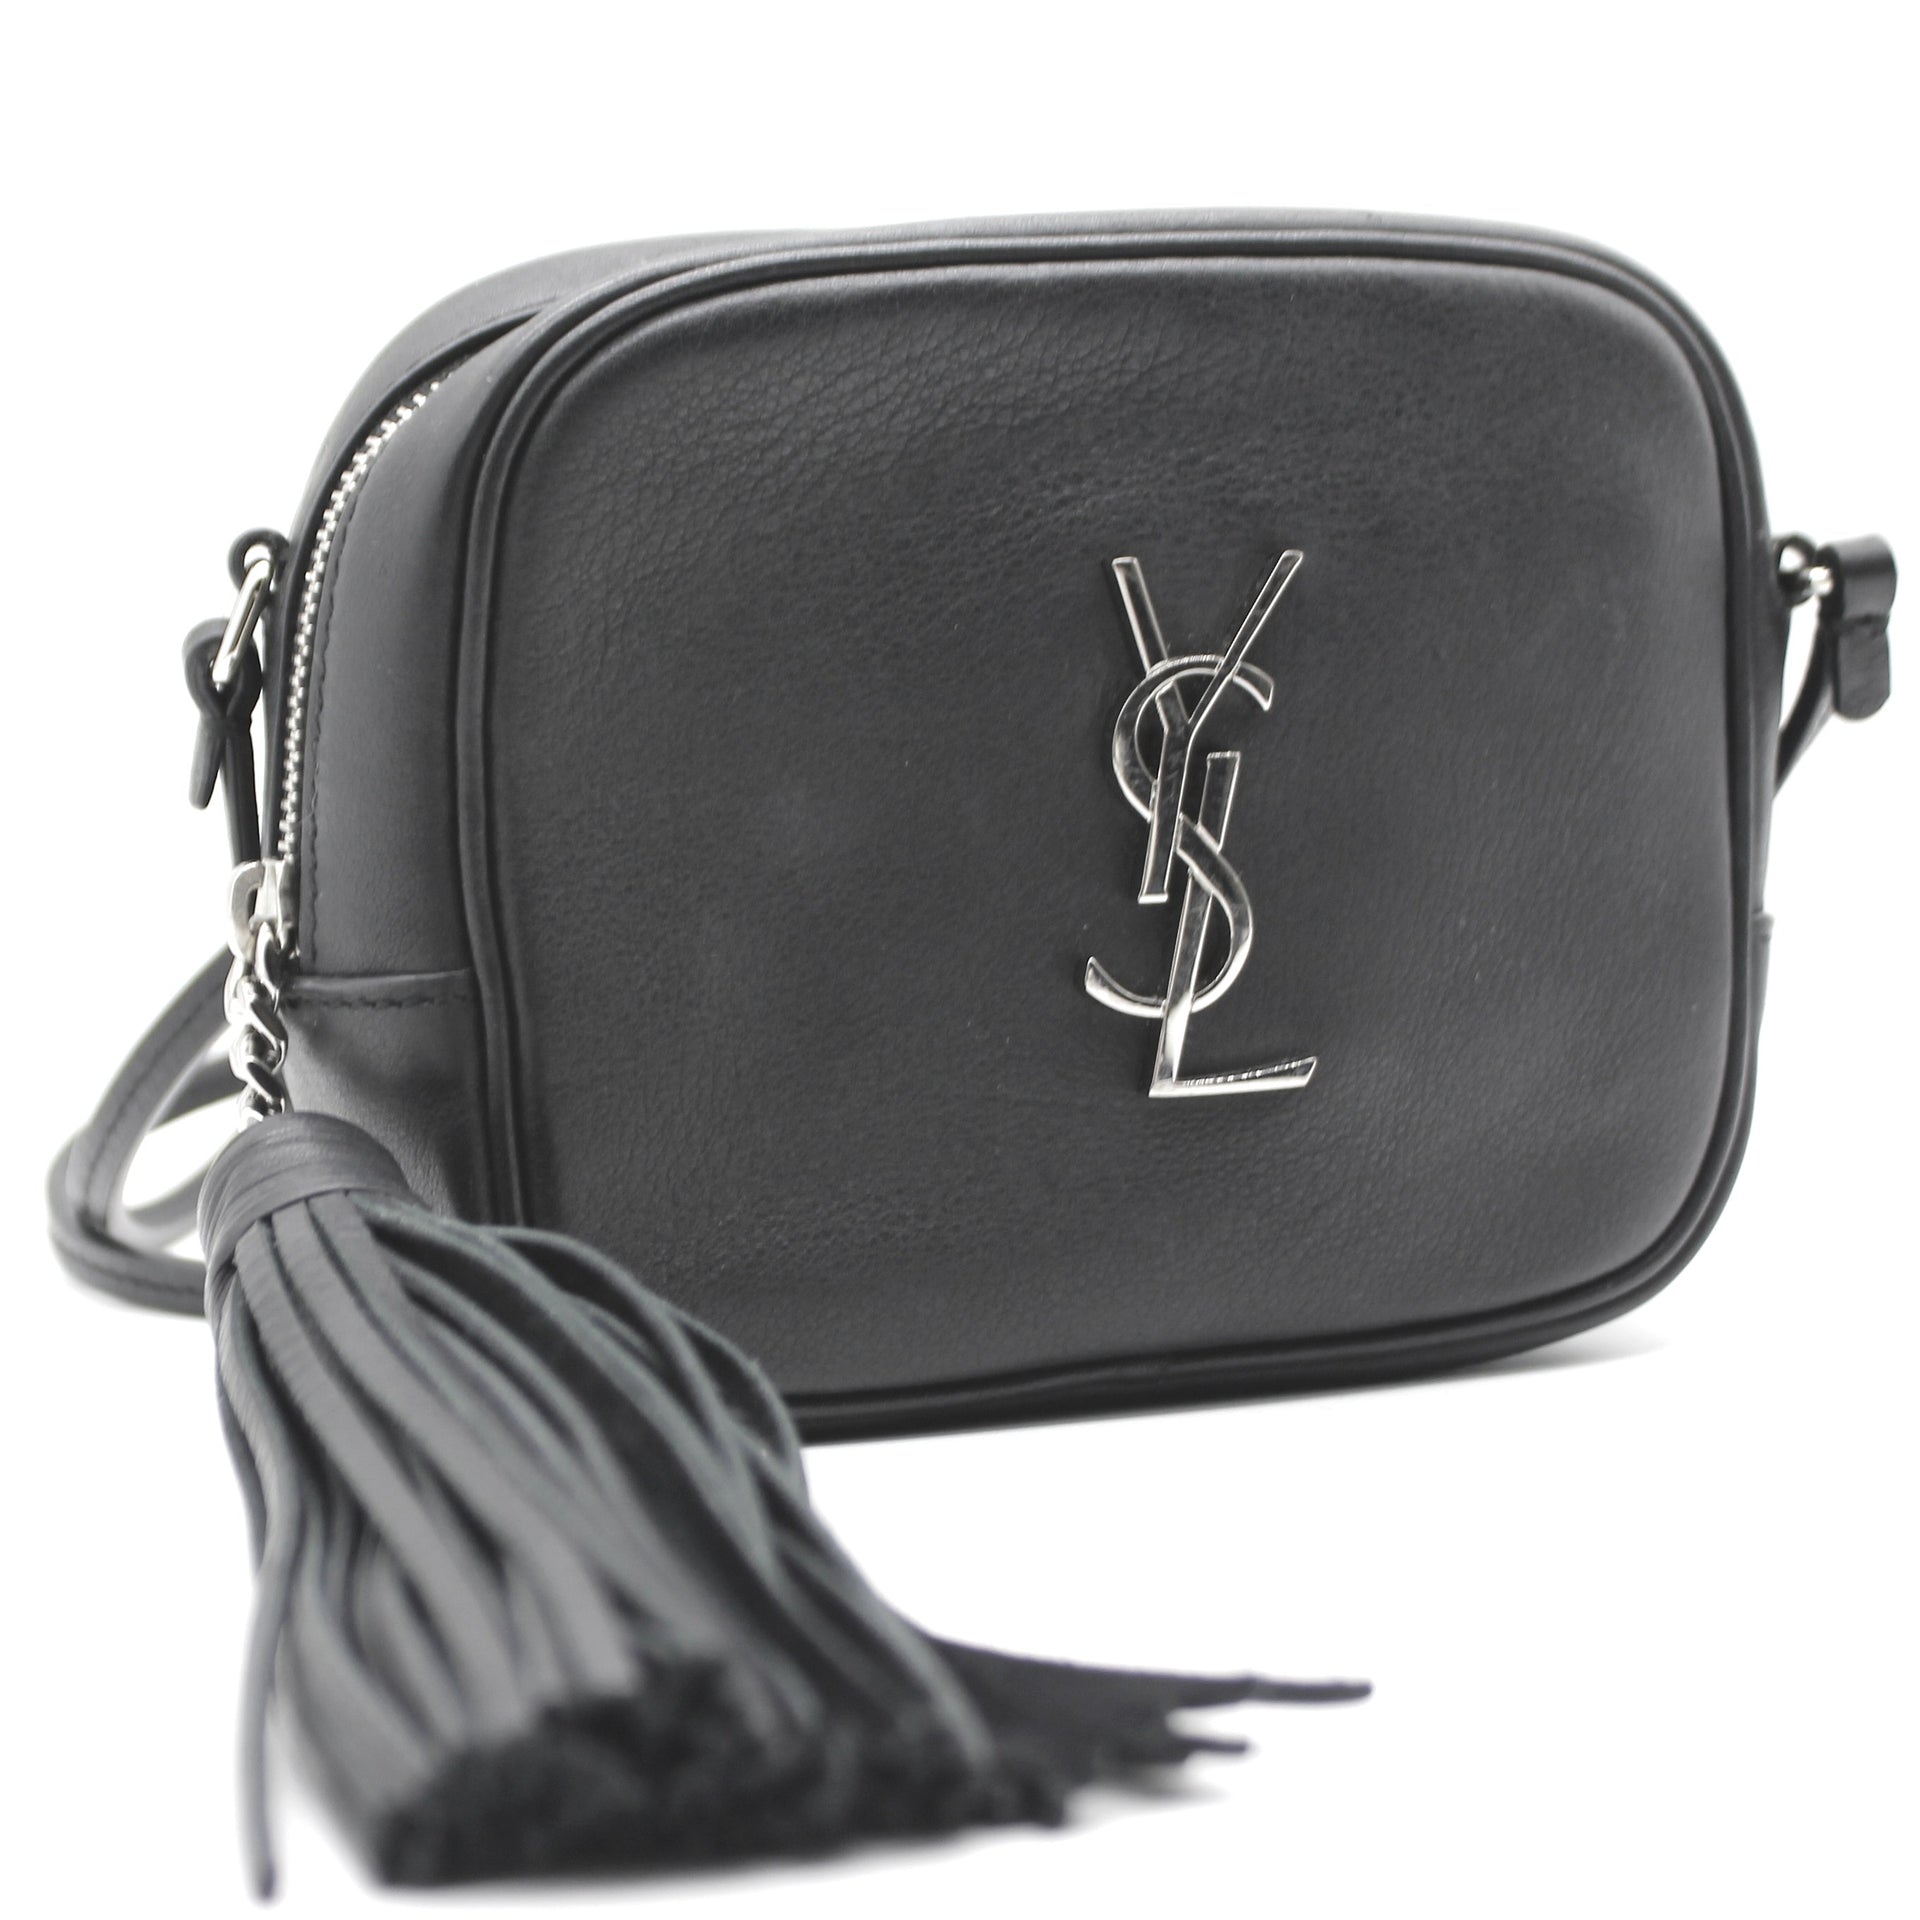 YSL Bags | Second Hand Saint Laurent Bags | EMIER